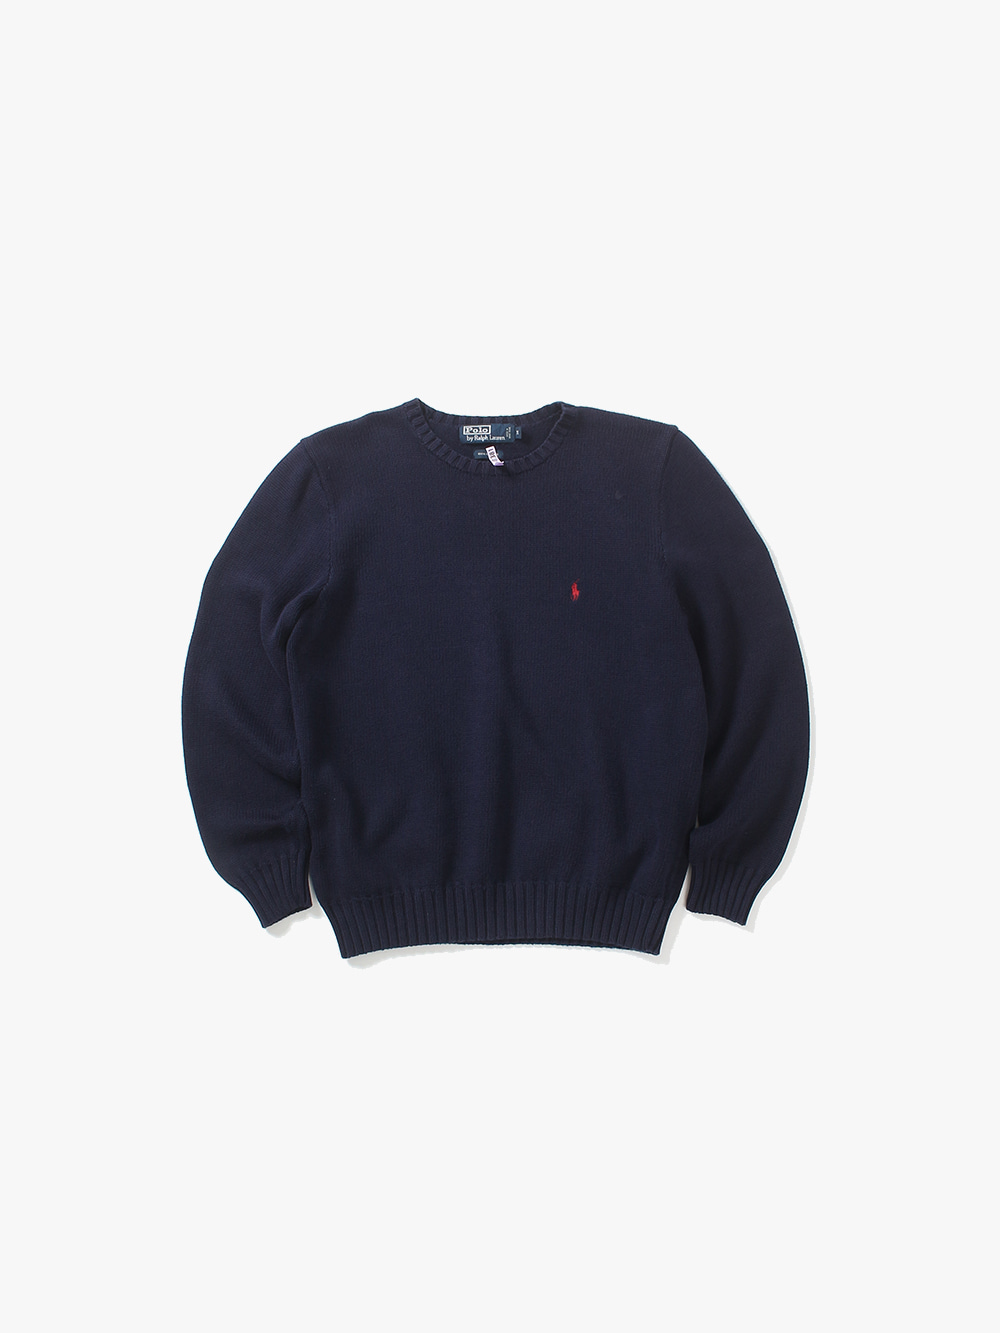 [ M ] Polo Ralph Lauren Sweater (6293)